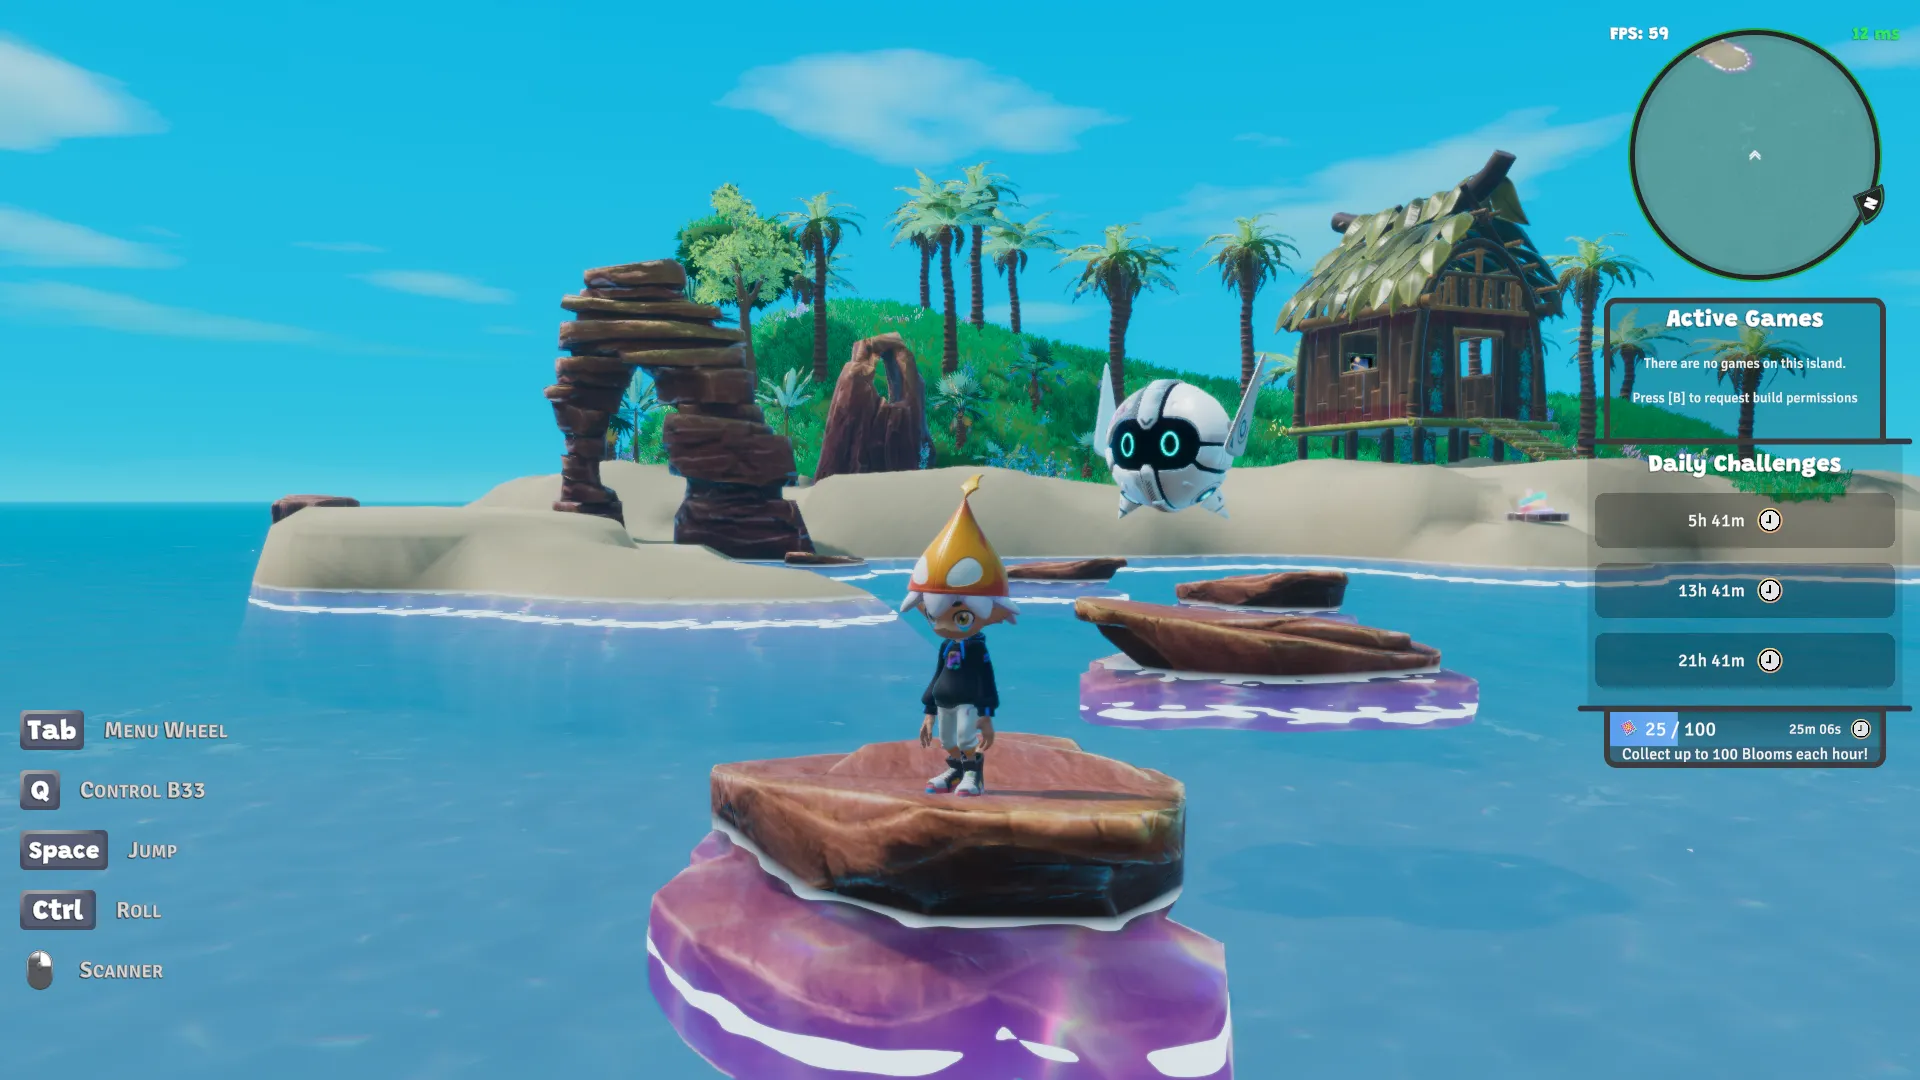 Schermafbeelding van Nifty Island toont een 3D-gerenderd eiland met boogvormige rotsformaties en rotsstapstenen in het water. Op een van de rotsen staat een klein personage met een hoed en een zwevende robot.